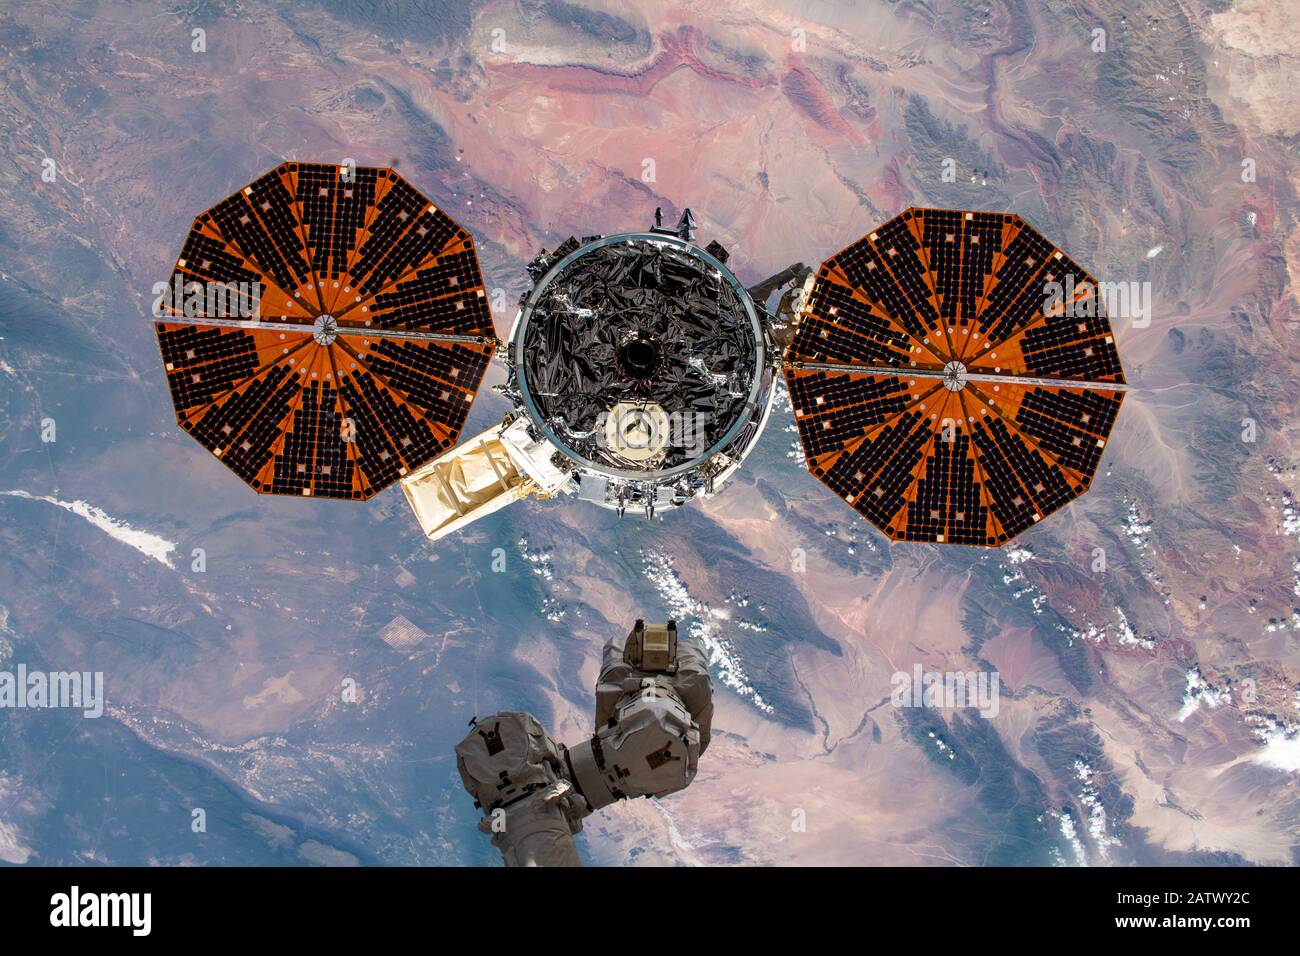 ISS - 31 gennaio 2020 - il Cignus Space Freighter di Northrop Grumman è raffigurato a pochi istanti dalla sua uscita dal braccio robotico Canadarm2 come Int Foto Stock